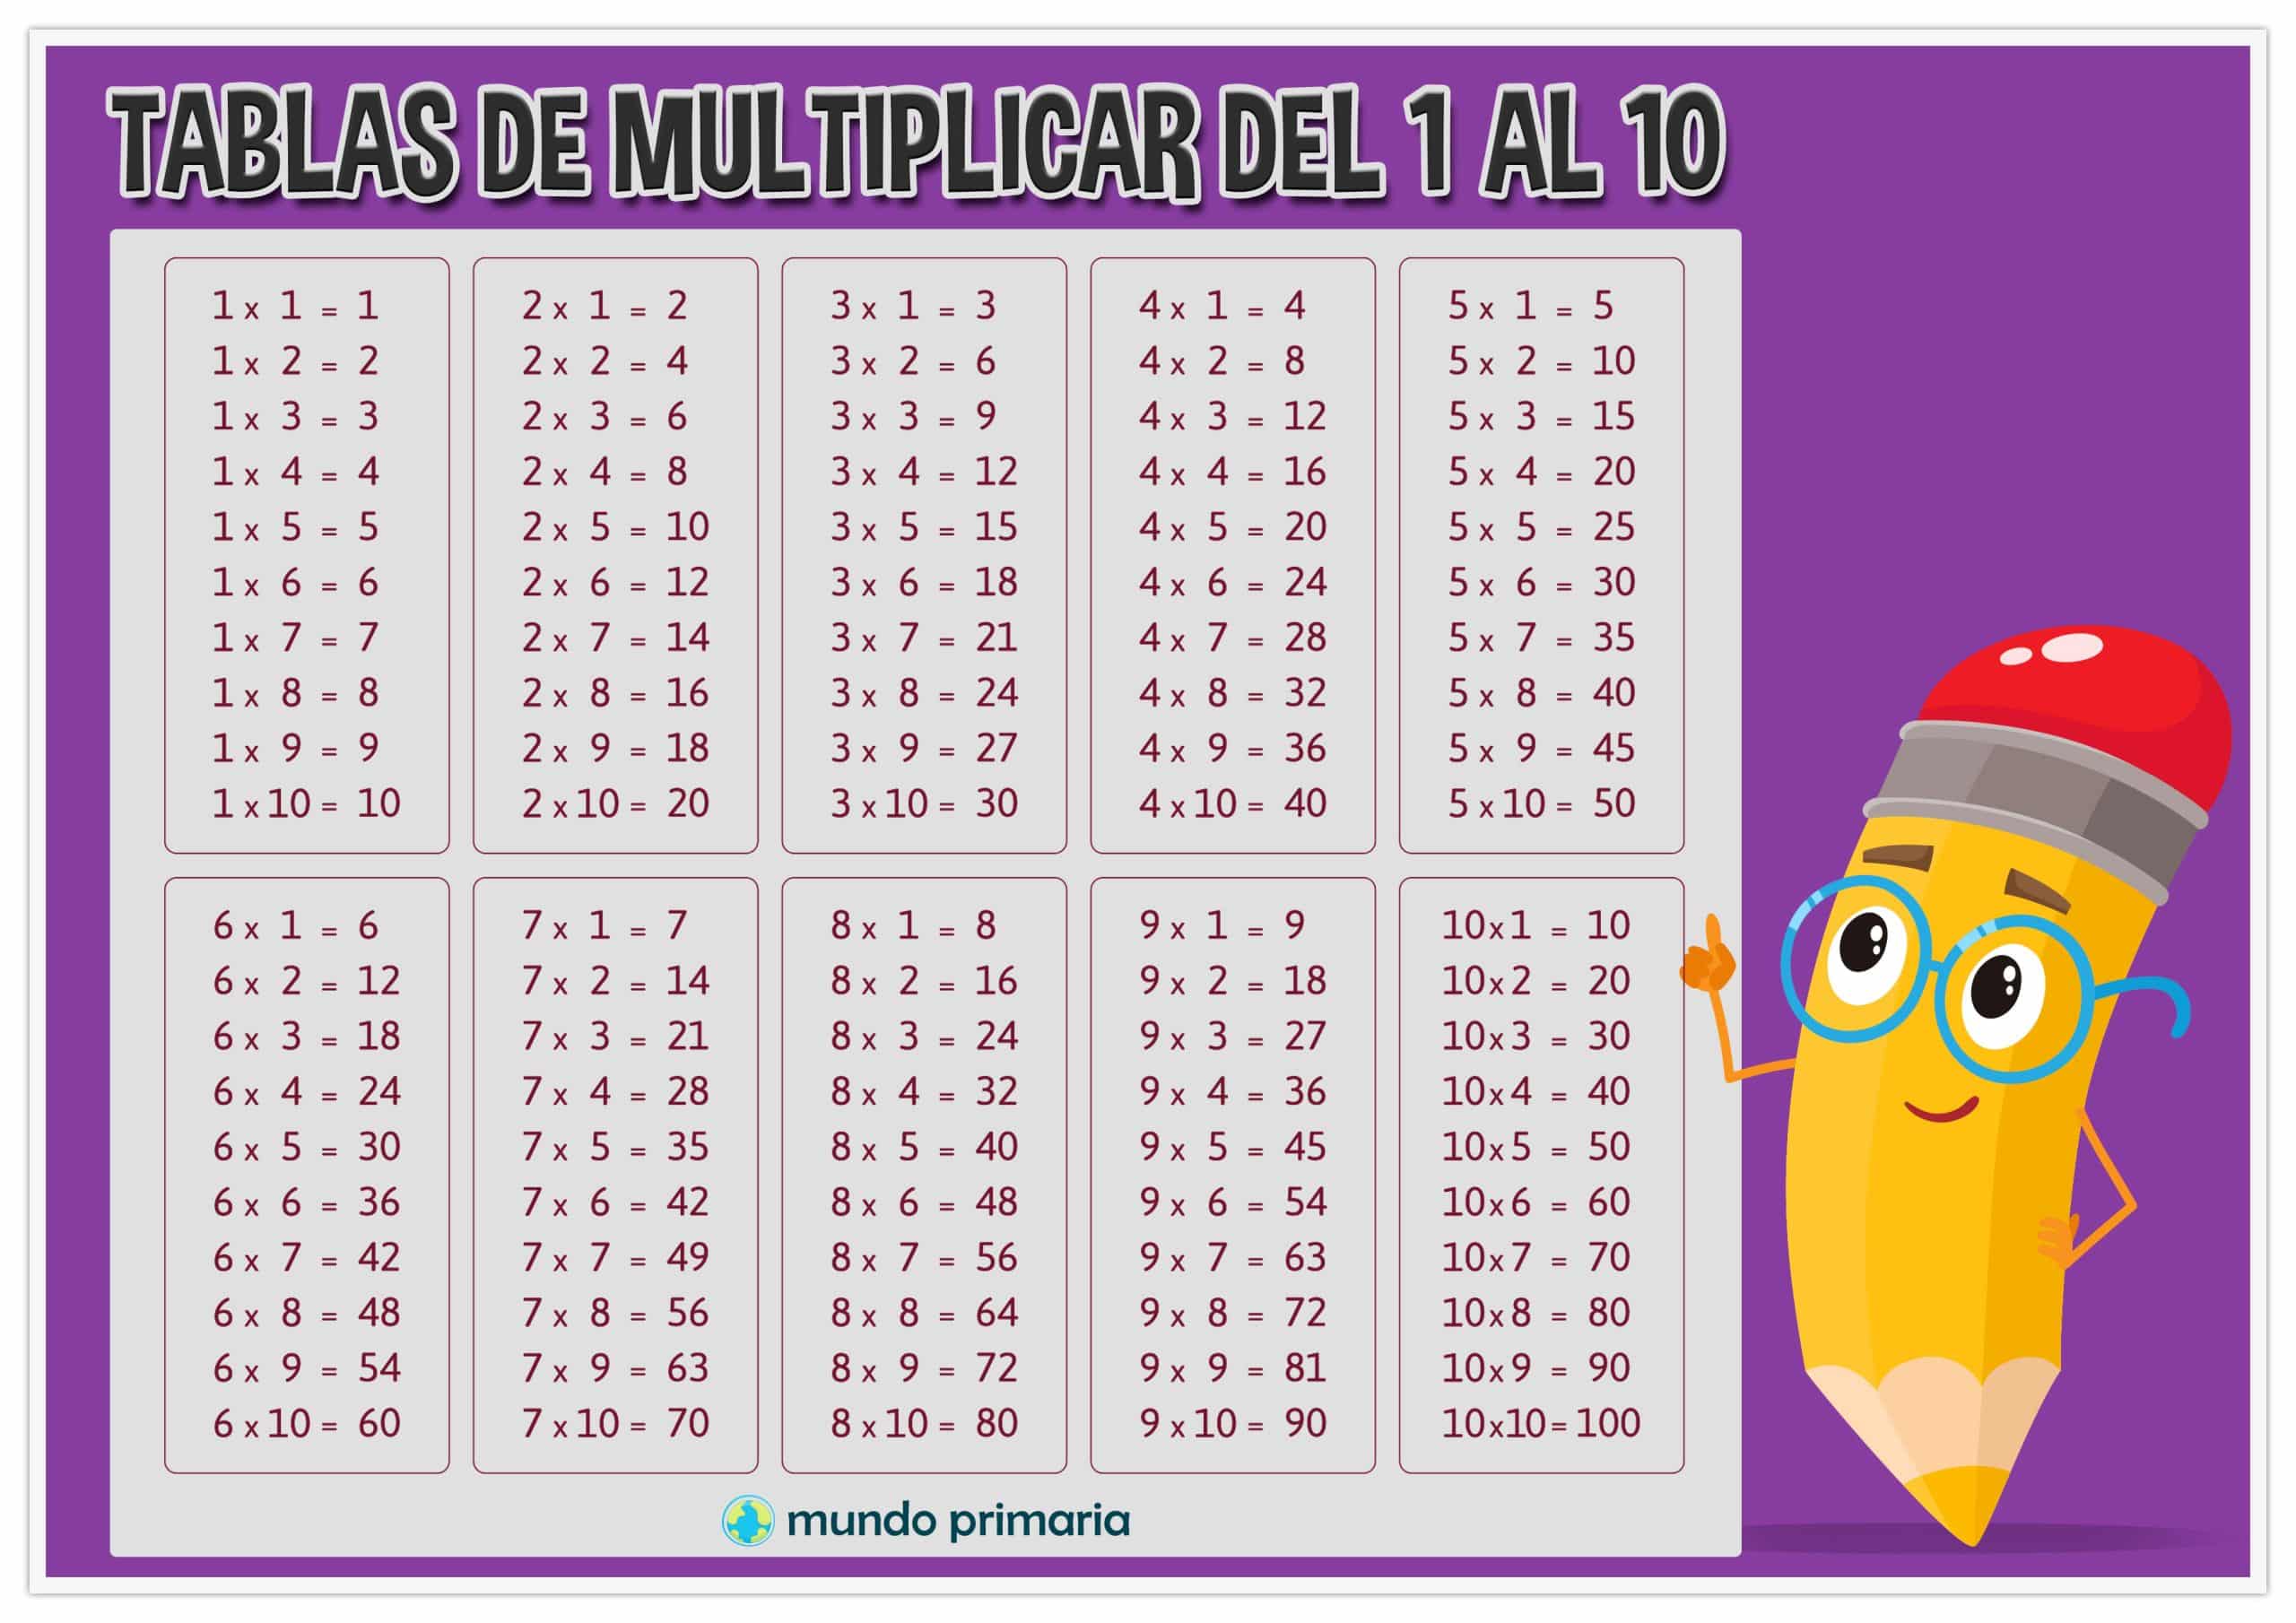 Foto de las tablas de multiplicar